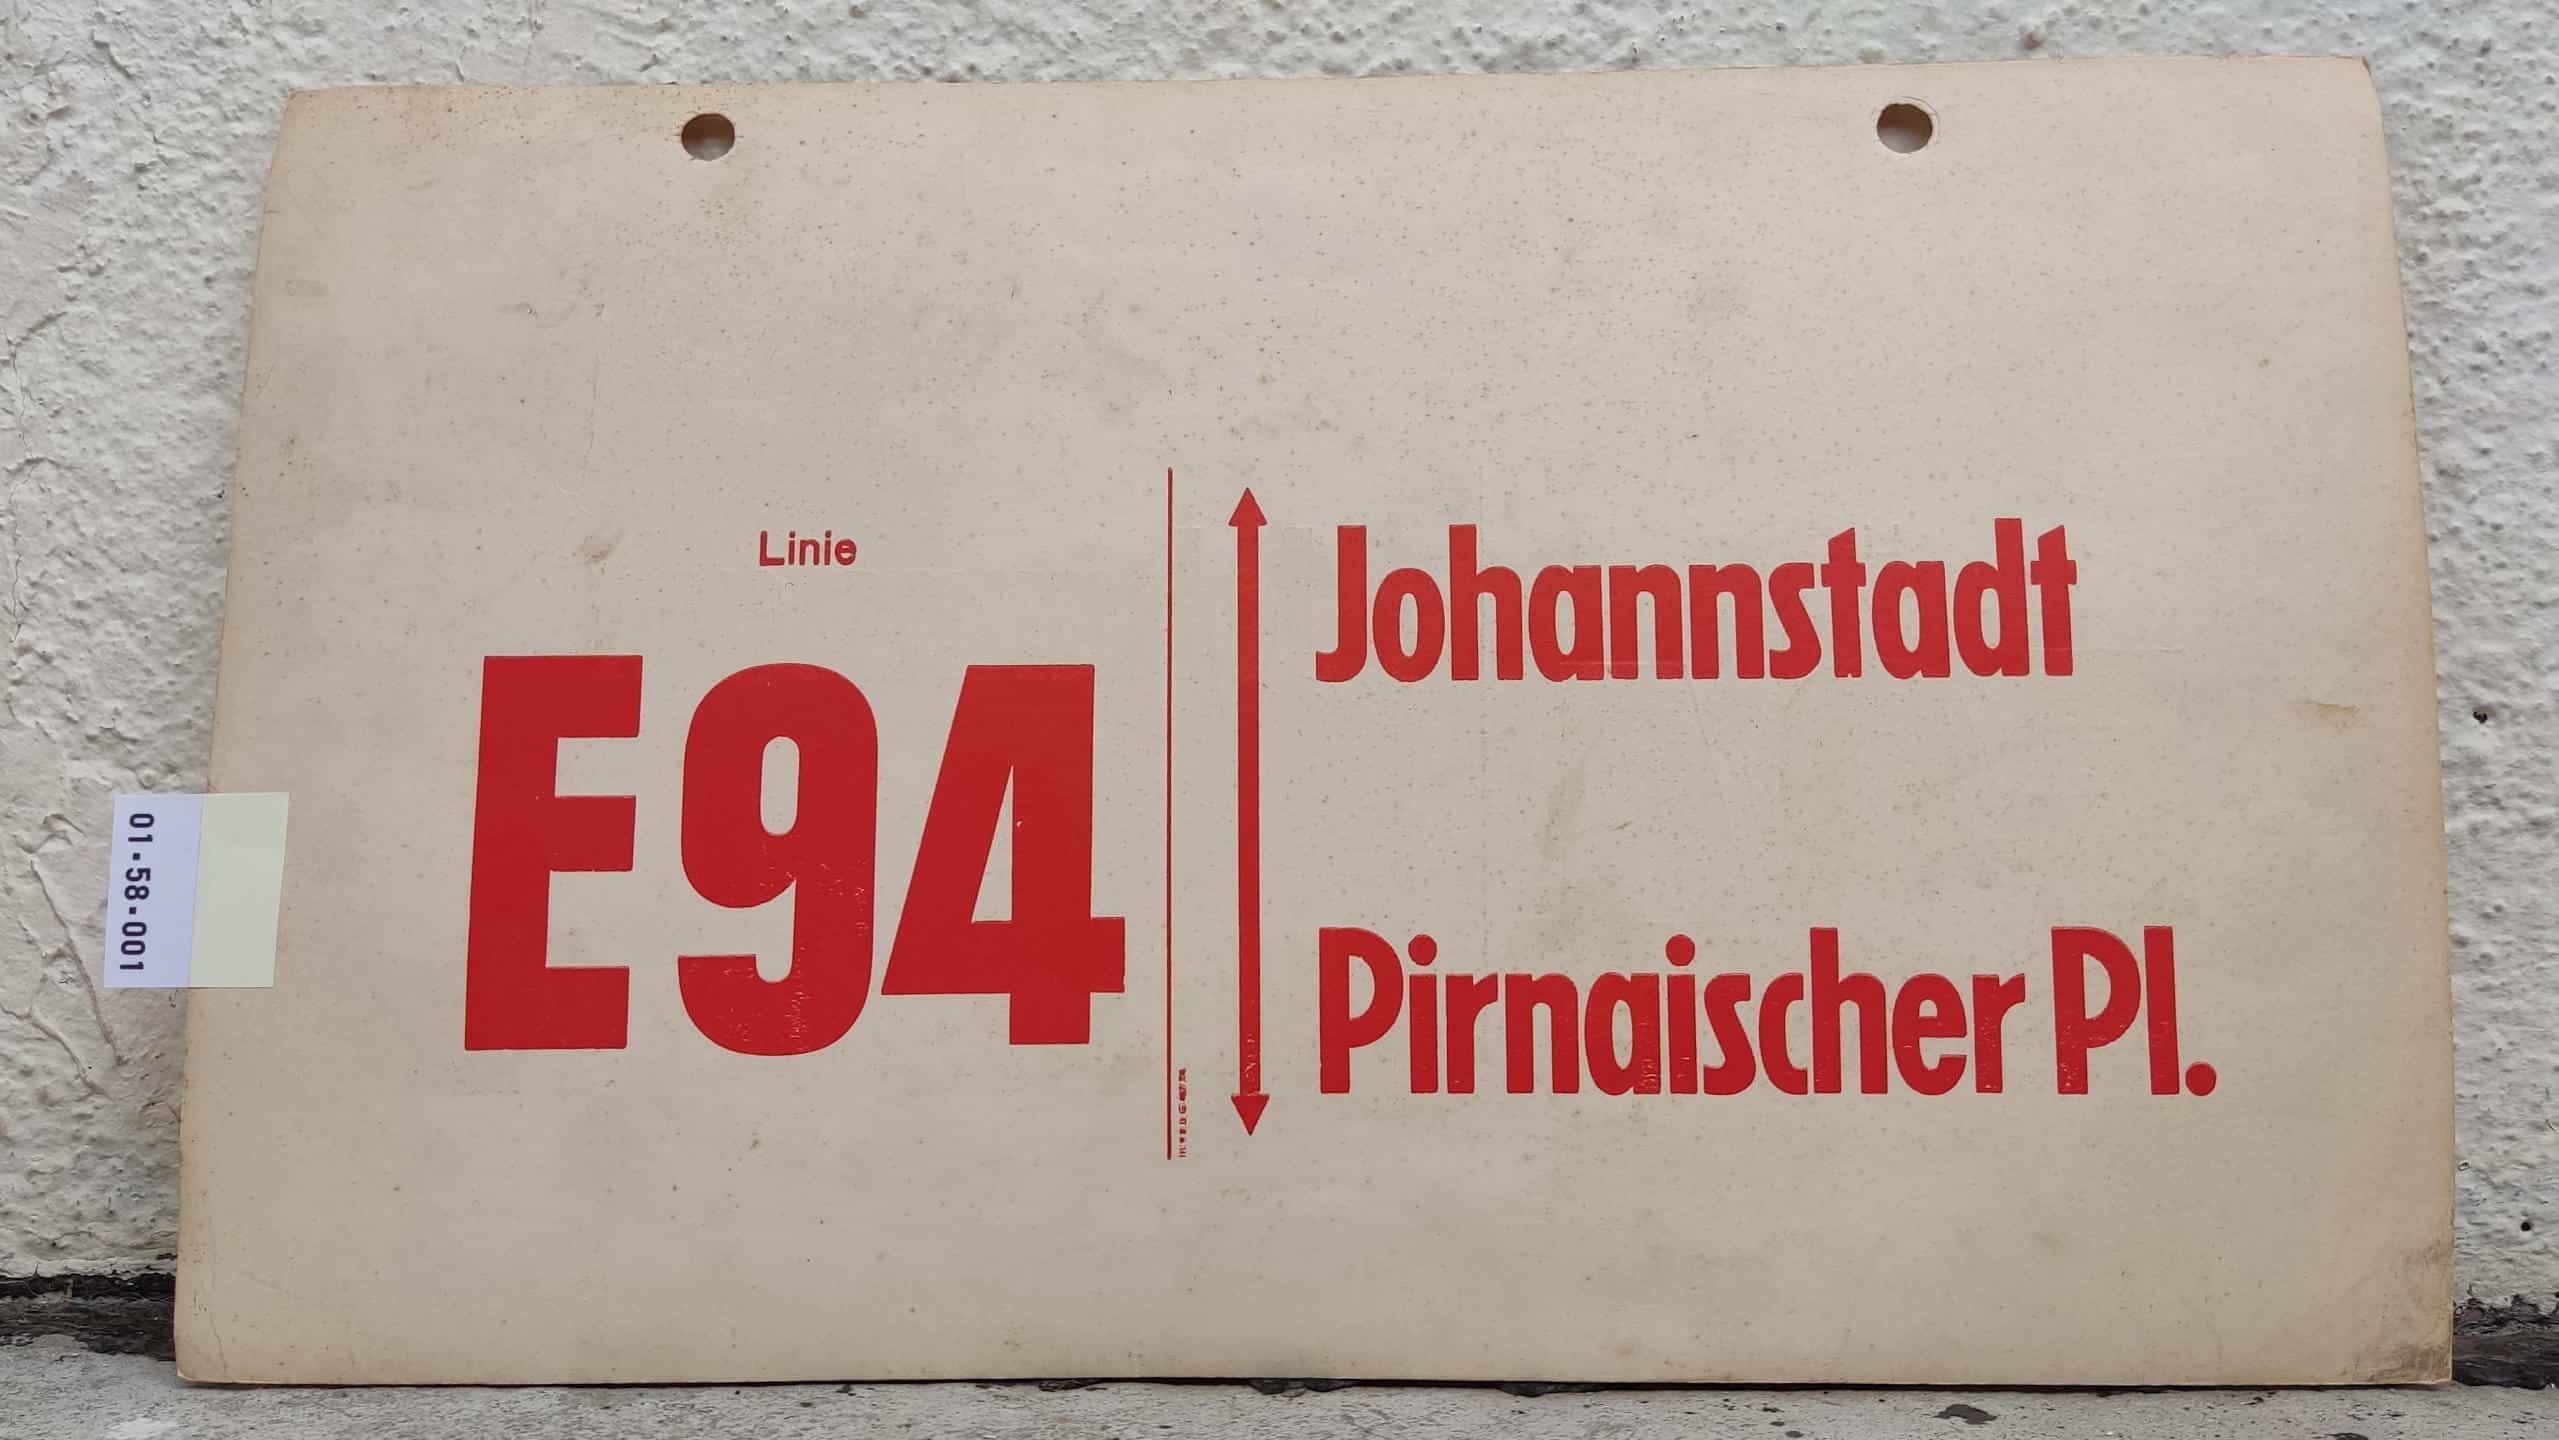 Ein seltenes Bus-Linienschild aus Dresden der Linie E94 von Johannstadt nach Pirnaischer Pl. #1